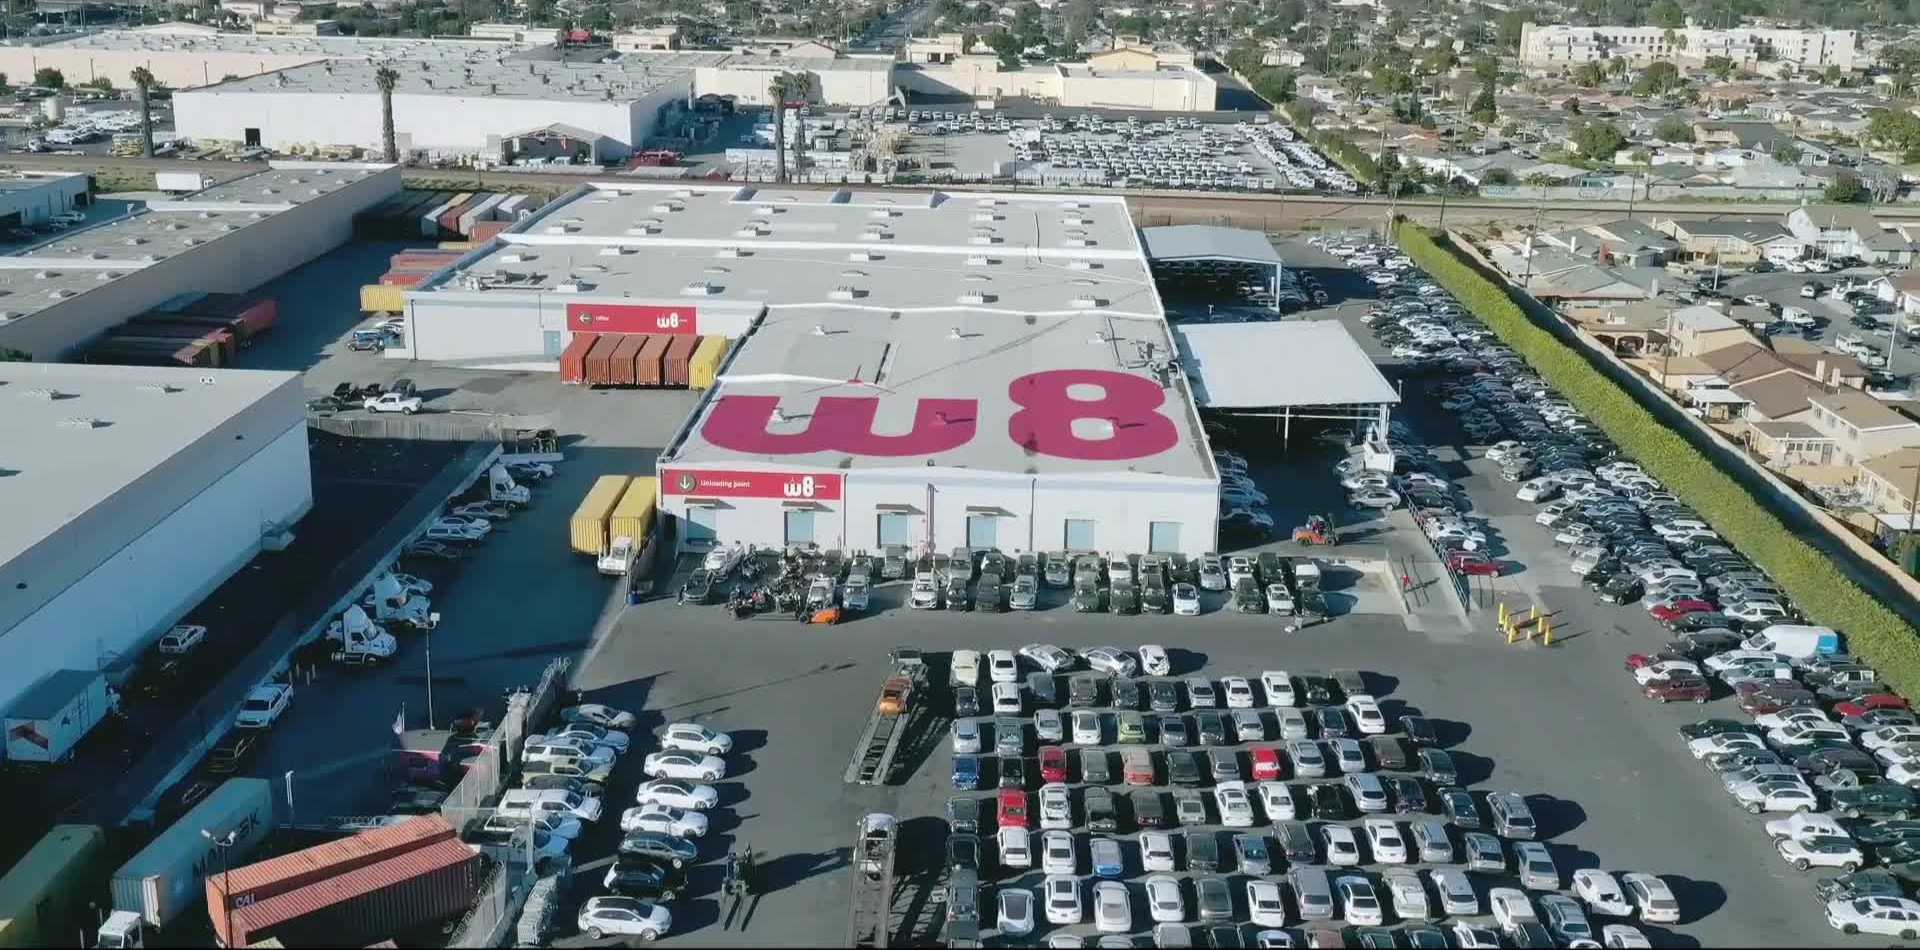 В центре фото склад с большим логотипом W8 на крыше и логотипами поменьше над несколькими входами. Вокруг склада парковка, на которой припарковано много автомобилей.